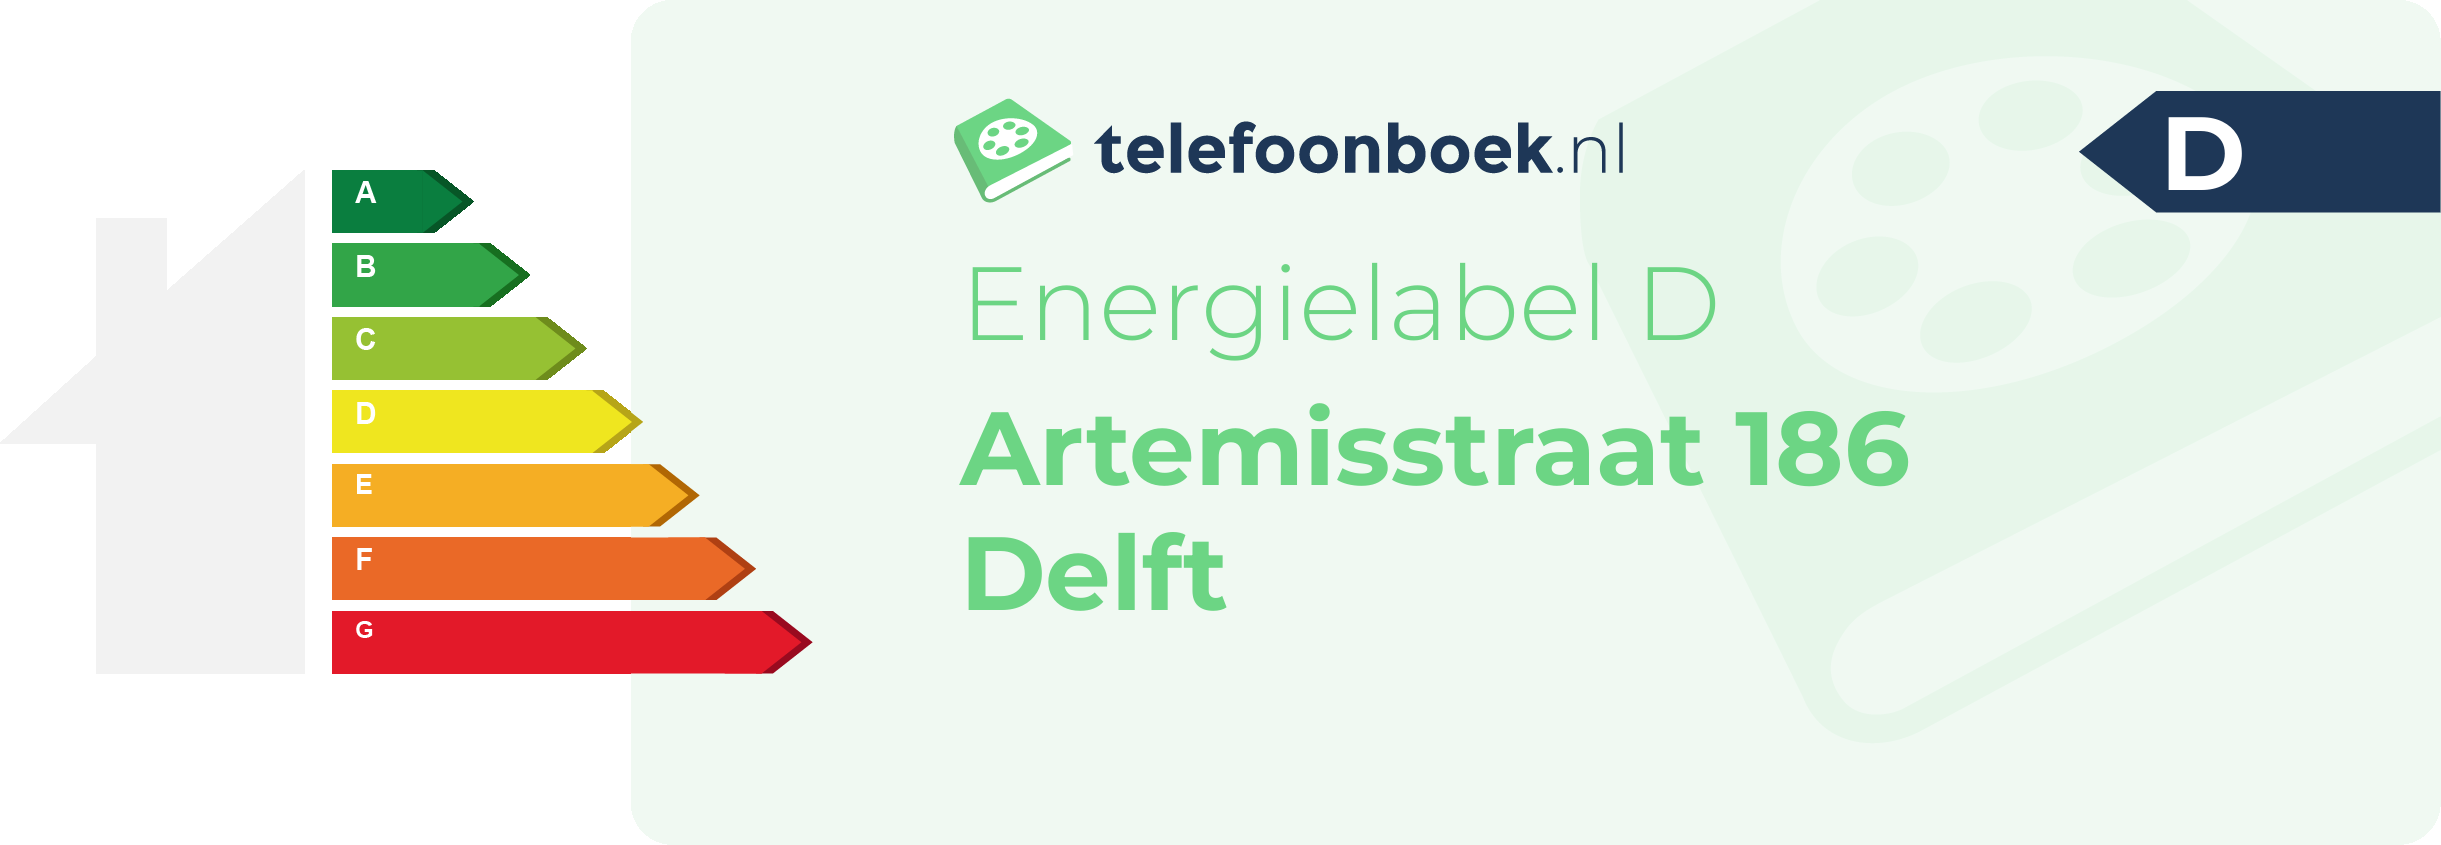 Energielabel Artemisstraat 186 Delft